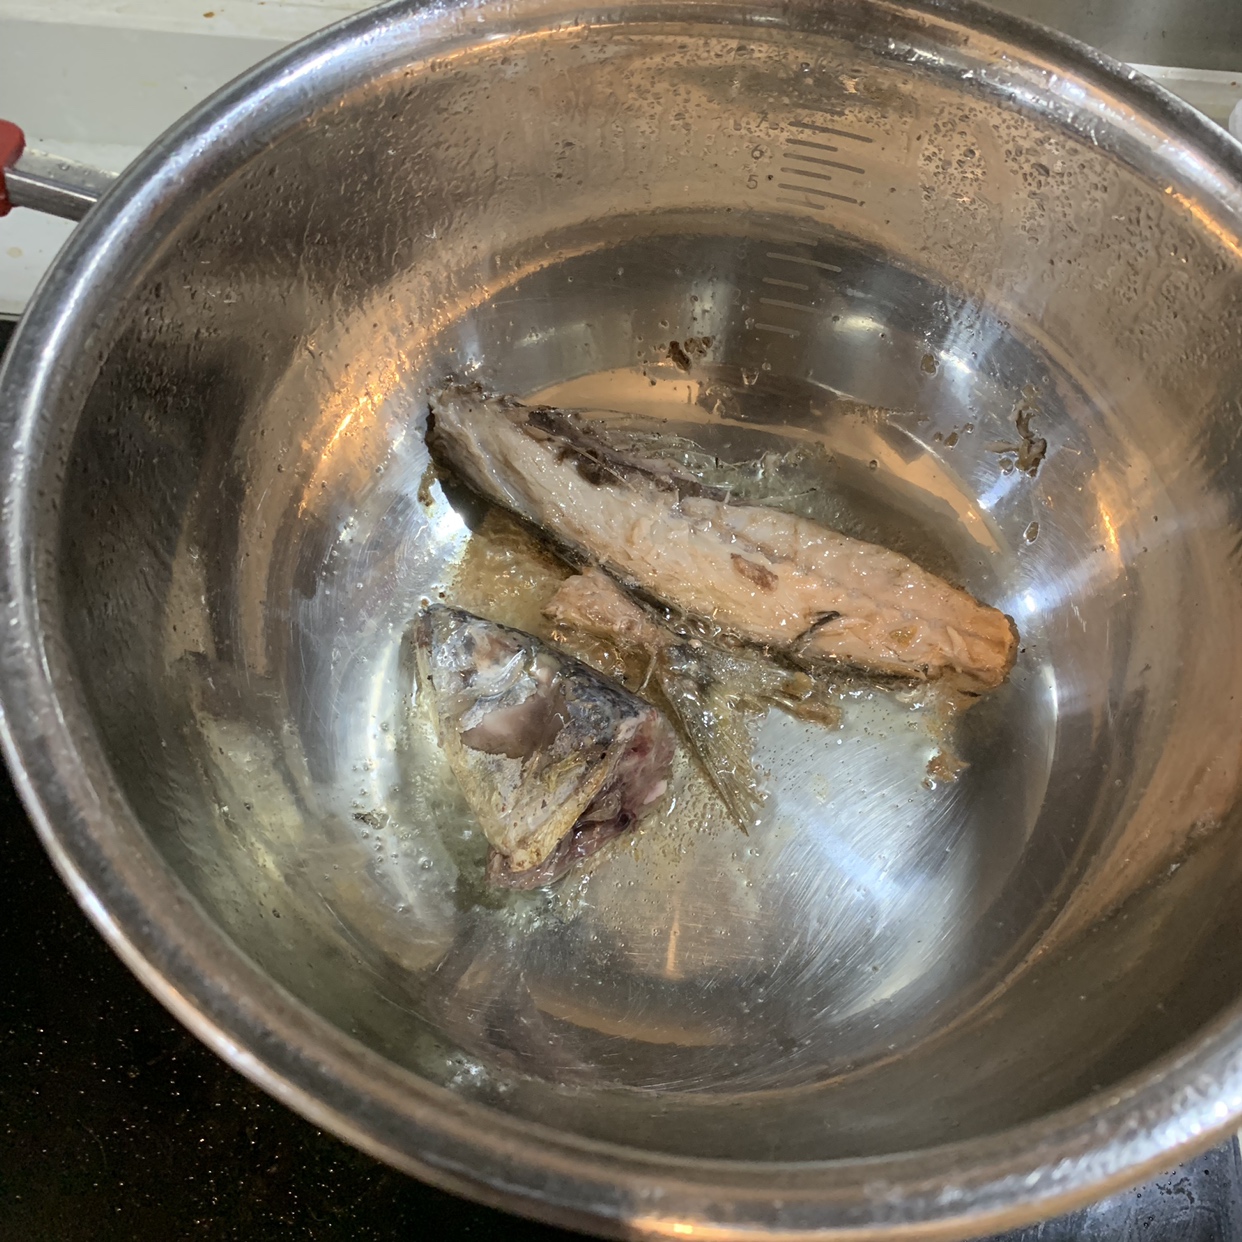 青花鱼汤 青占鱼汤 鲭鱼汤的做法步骤图 一小匙酱 下厨房